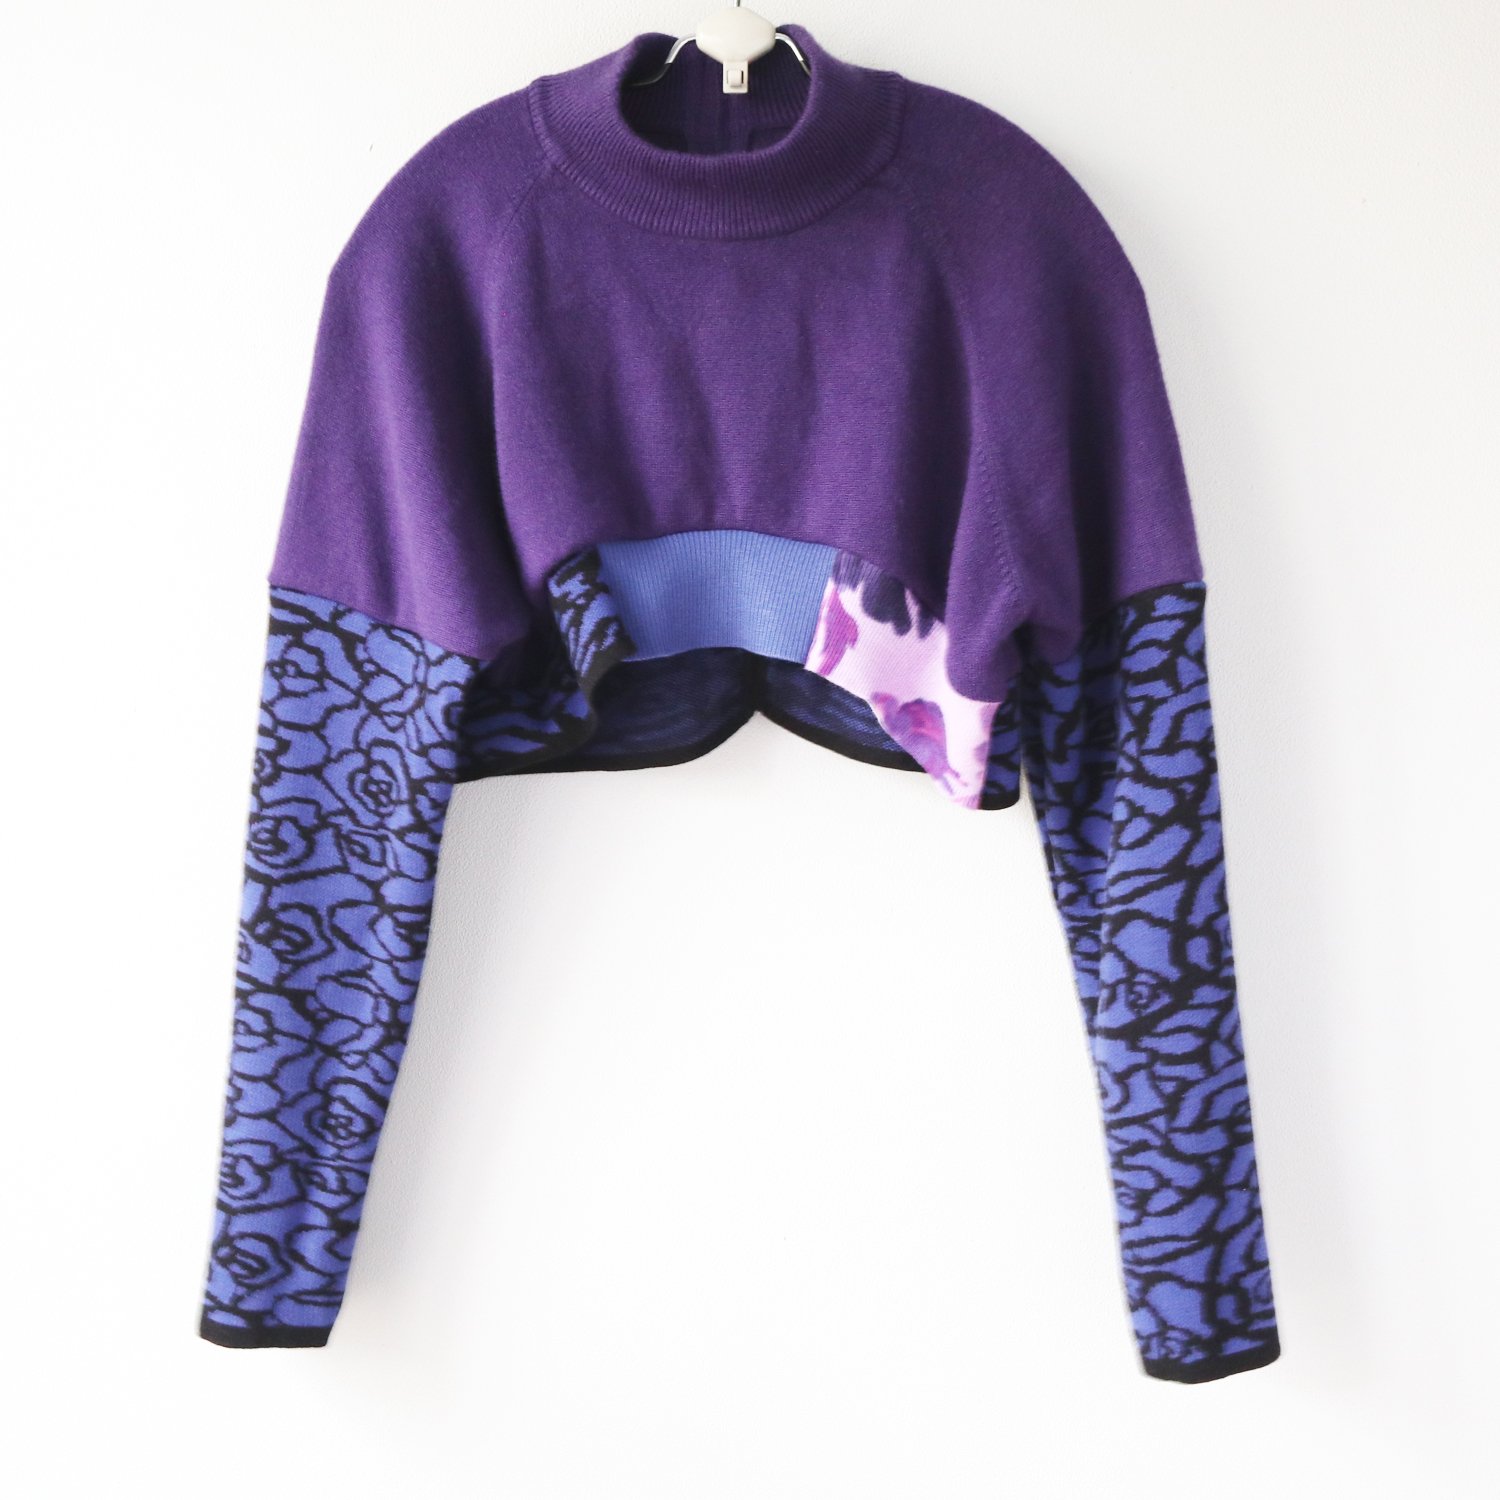 adult L violet floral sweater zip shrug.jpg